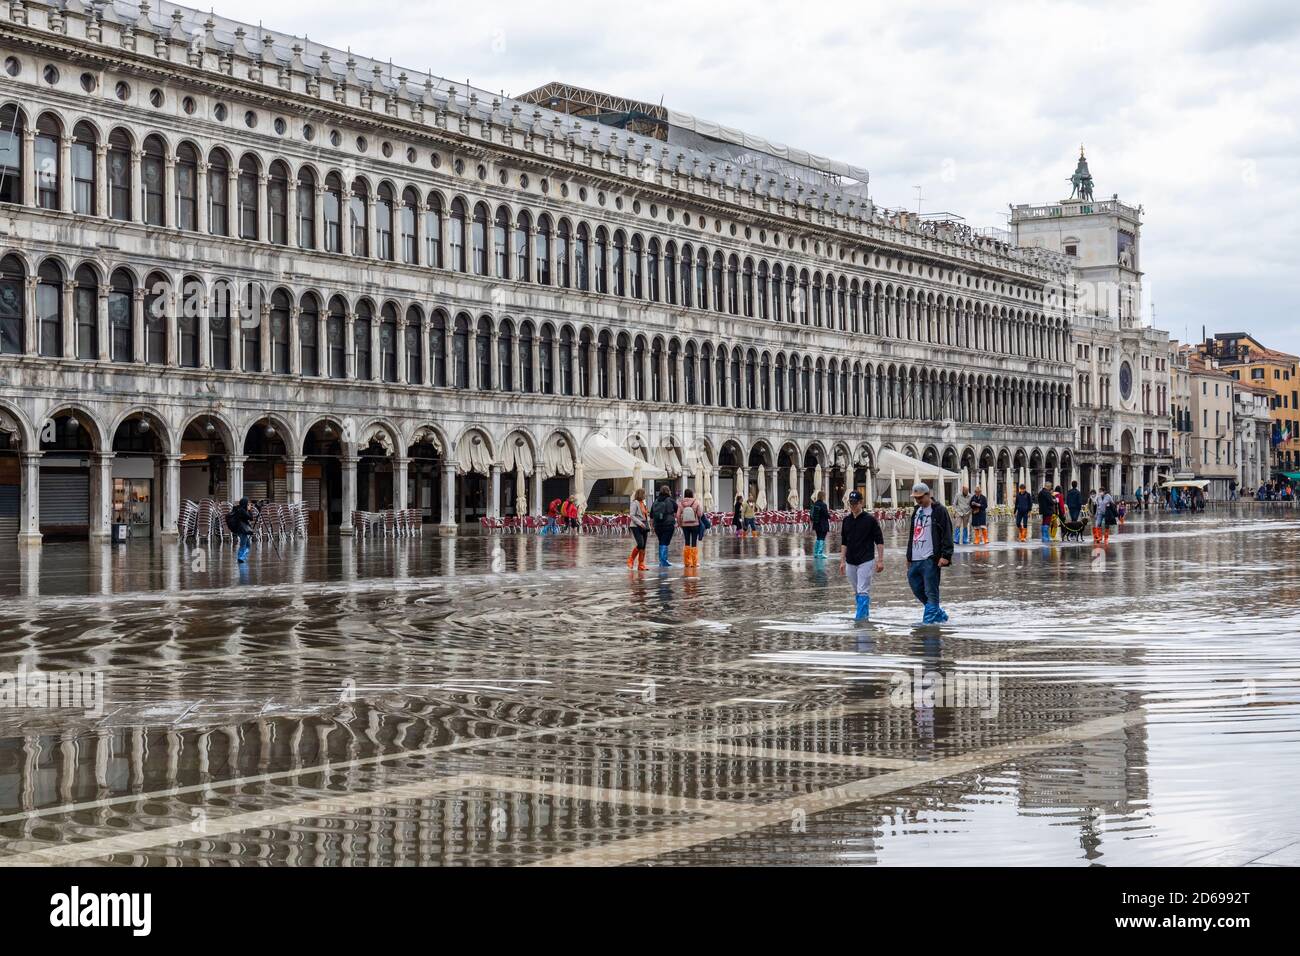 Acque alte - acqua alta che causa inondazioni in Piazza San Marco - turisti che si riversano attraverso l'acqua in abitazioni. Venezia, Italia durante la pandemia di Covid-19. Foto Stock